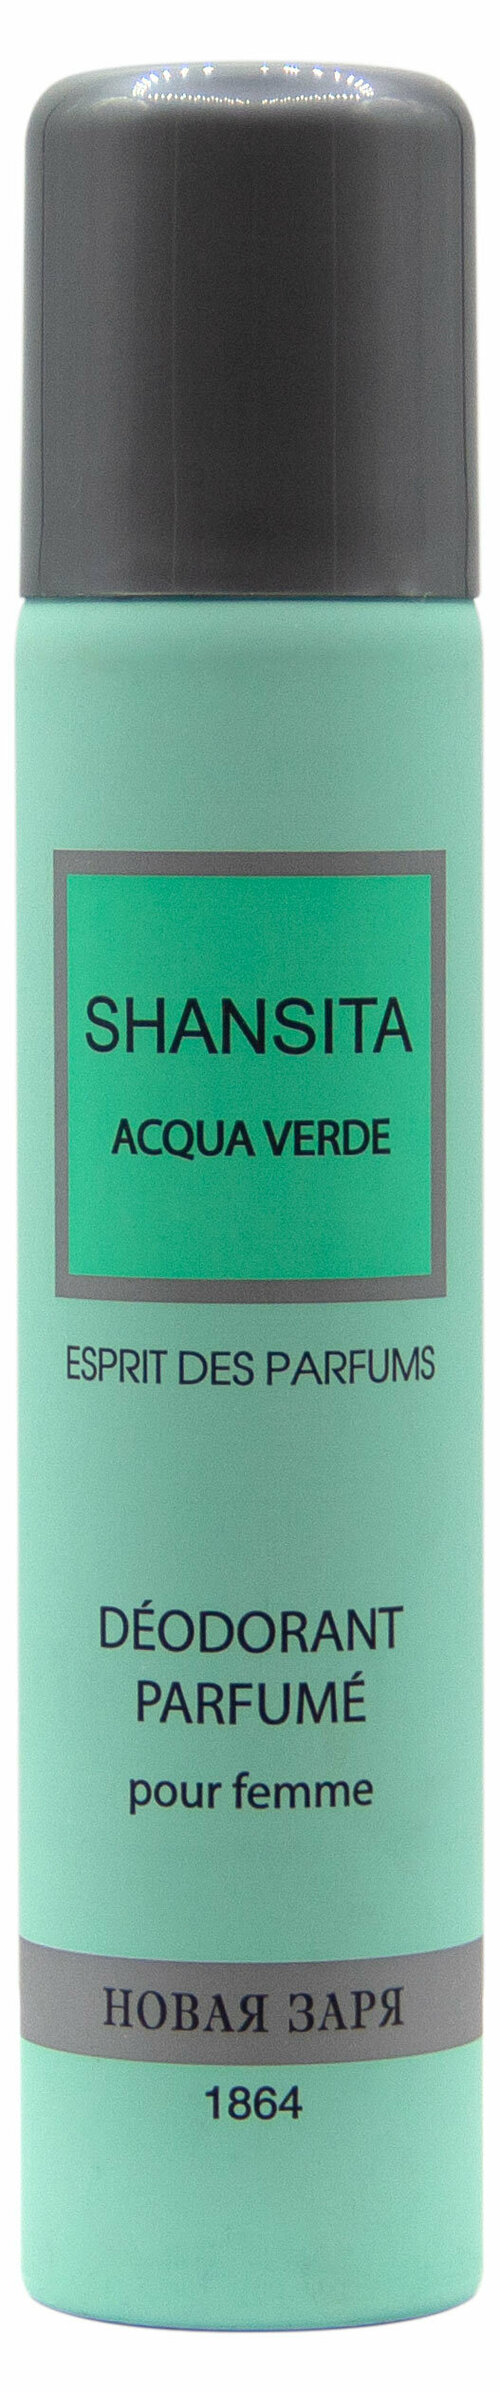 Дезодорант парфюмированный для женщин «Новая Заря» Дух духов Шансита свежая вода Shansita Acqua verde, 75 мл